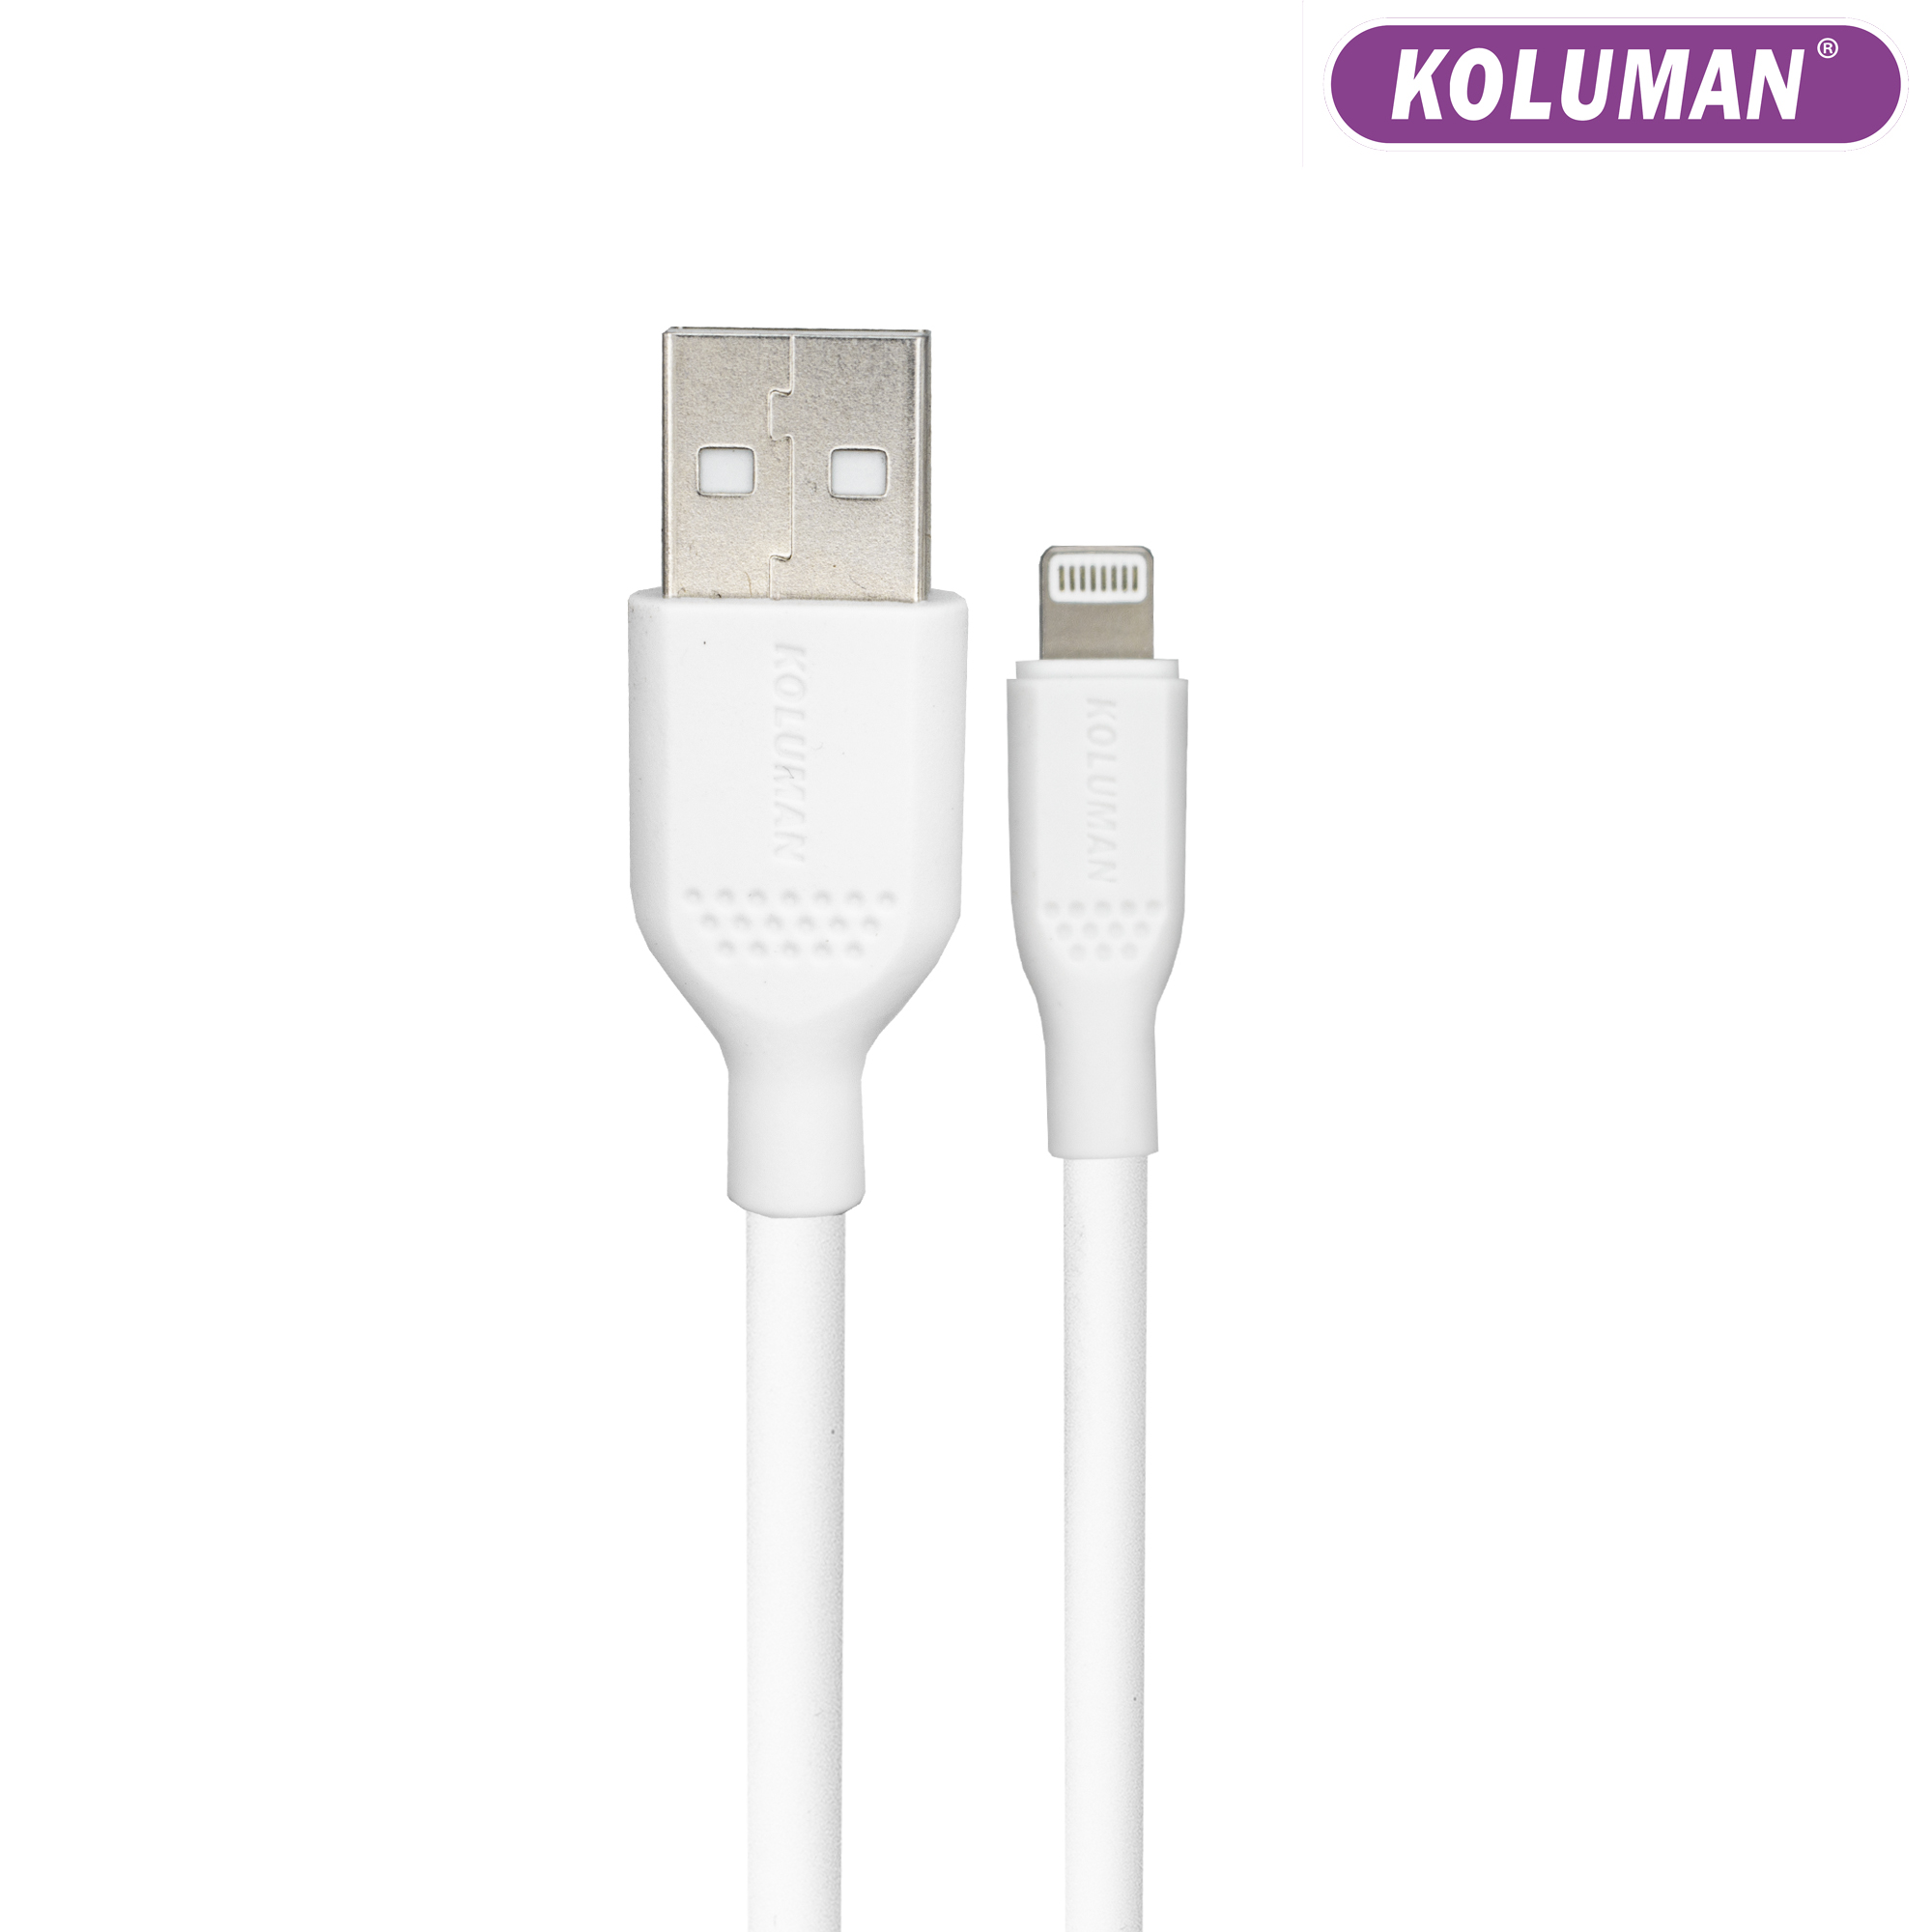 مشخصات، قیمت و خرید کابل تبدیل USB به لایتنینگ کلومن مدل KD - 02 ...